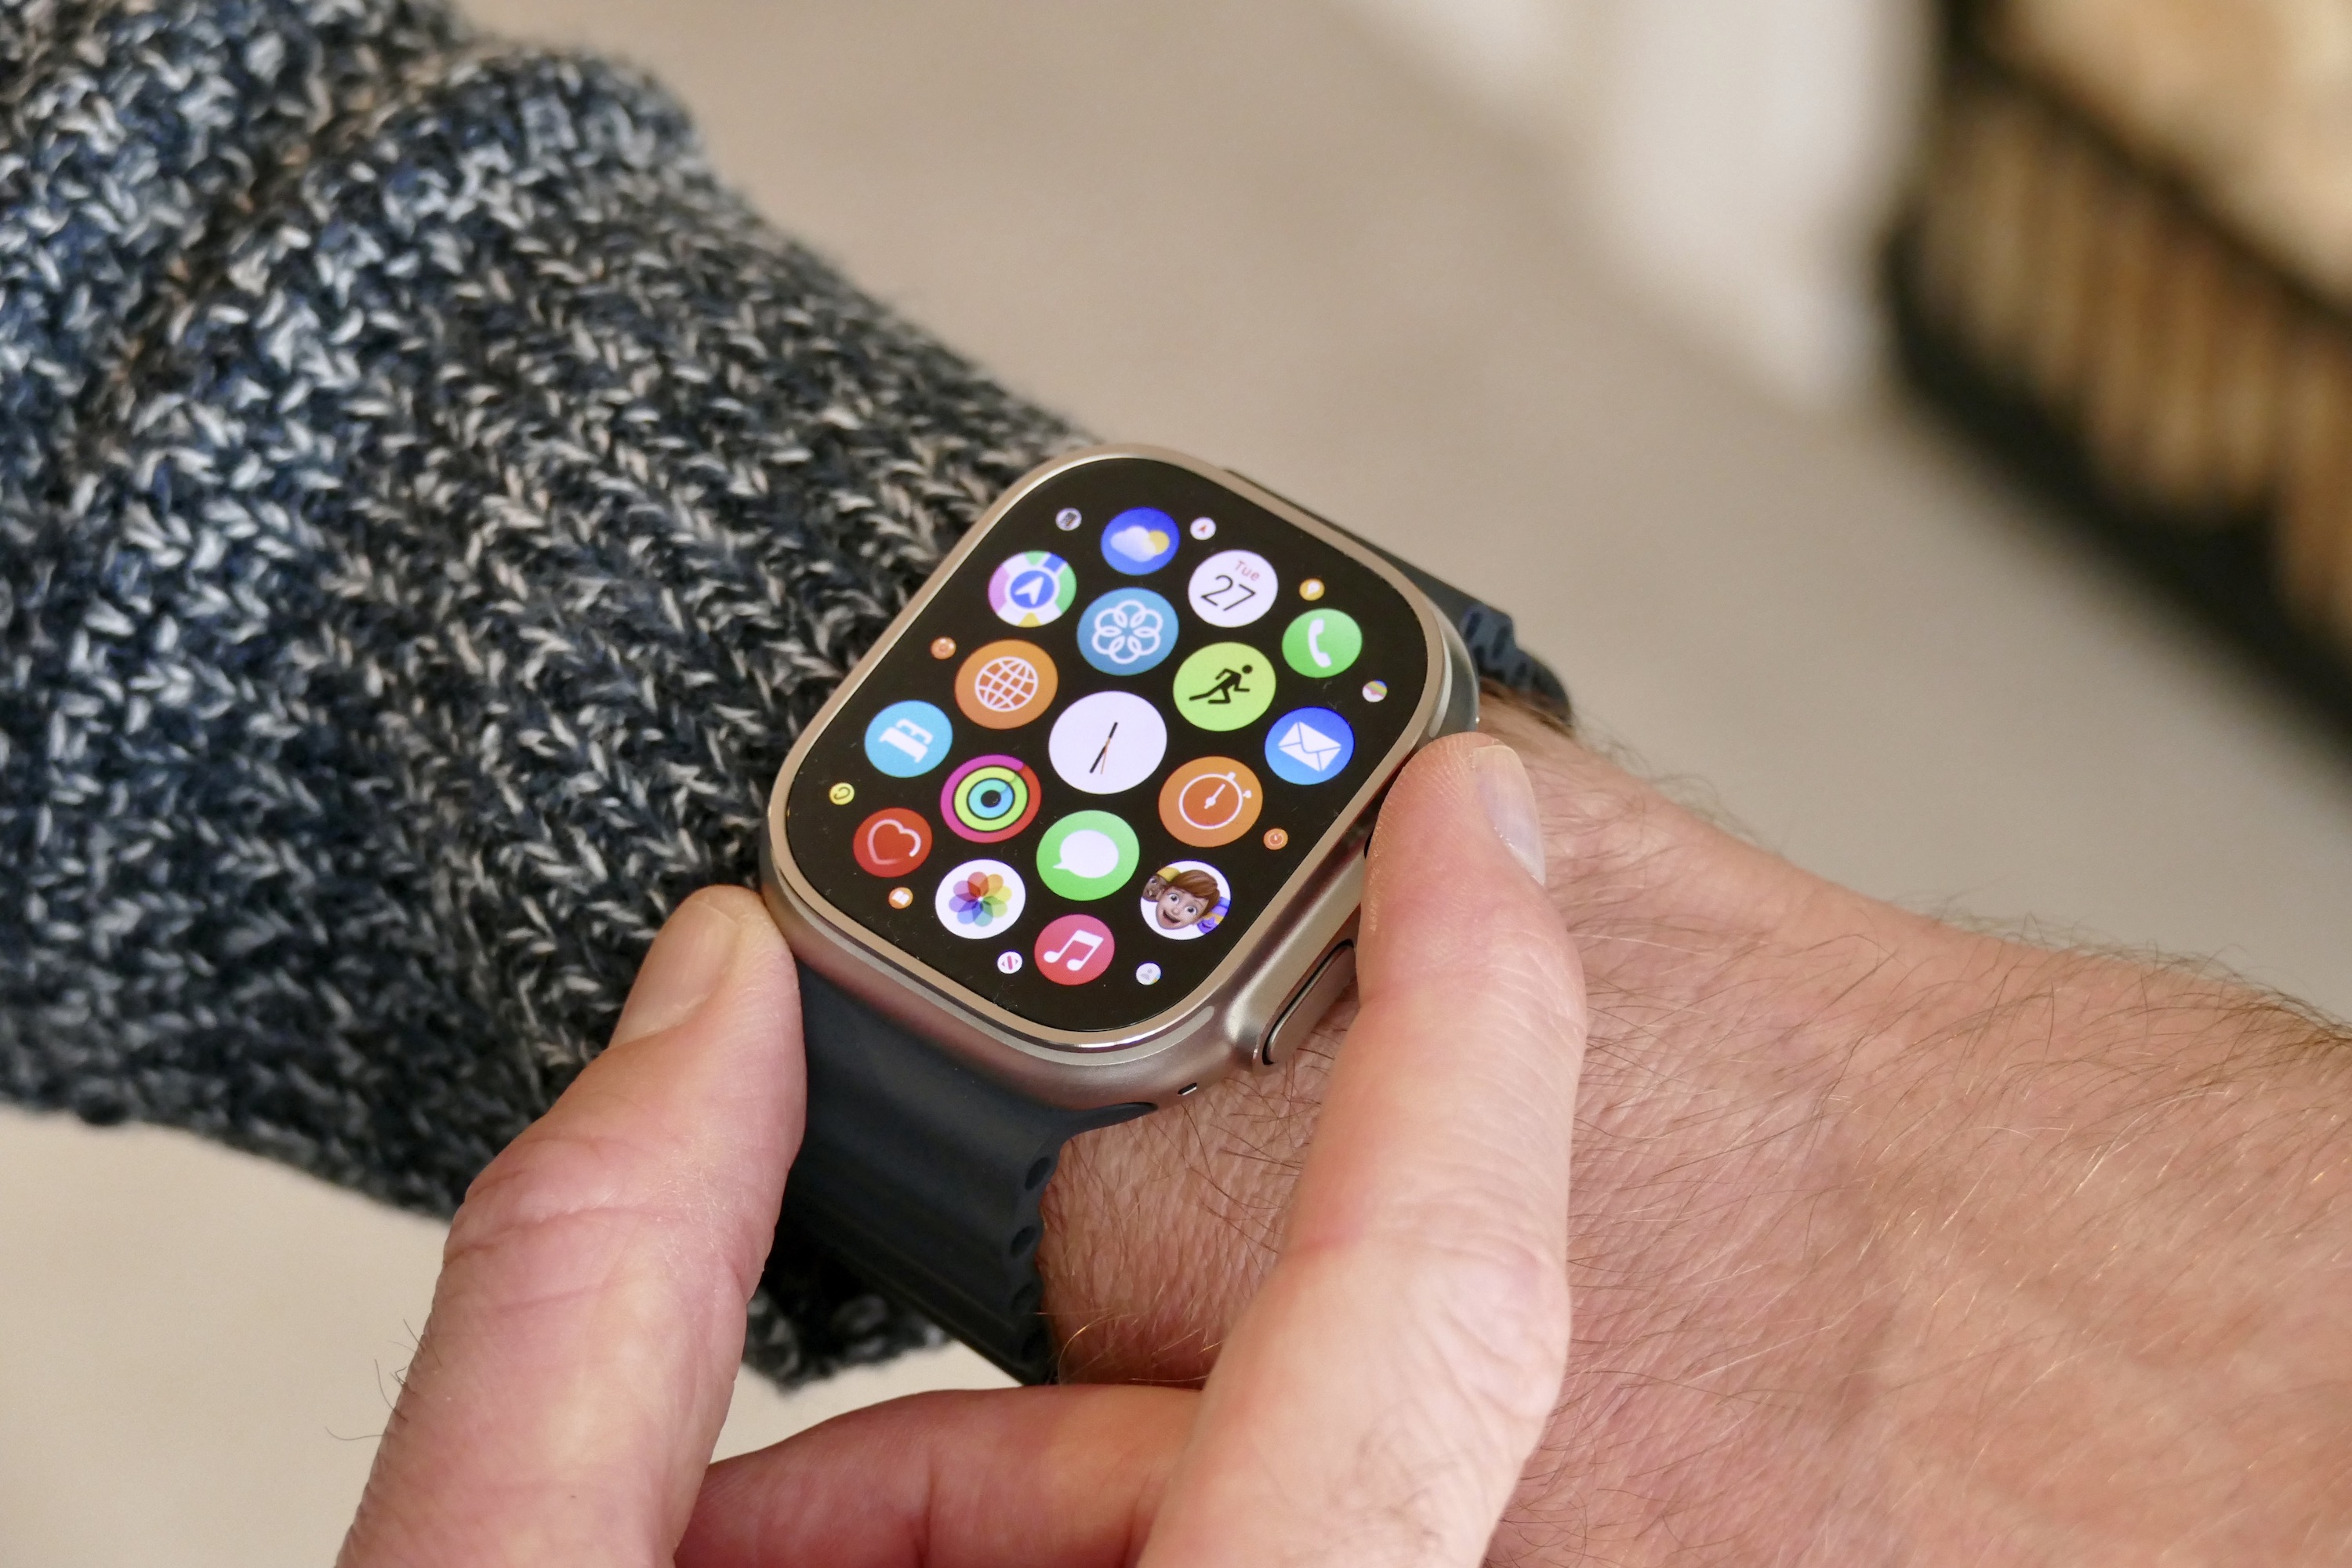 Smartwatch Apple Watch Ultra 4G 49,0 mm com o Melhor Preço é no Zoom